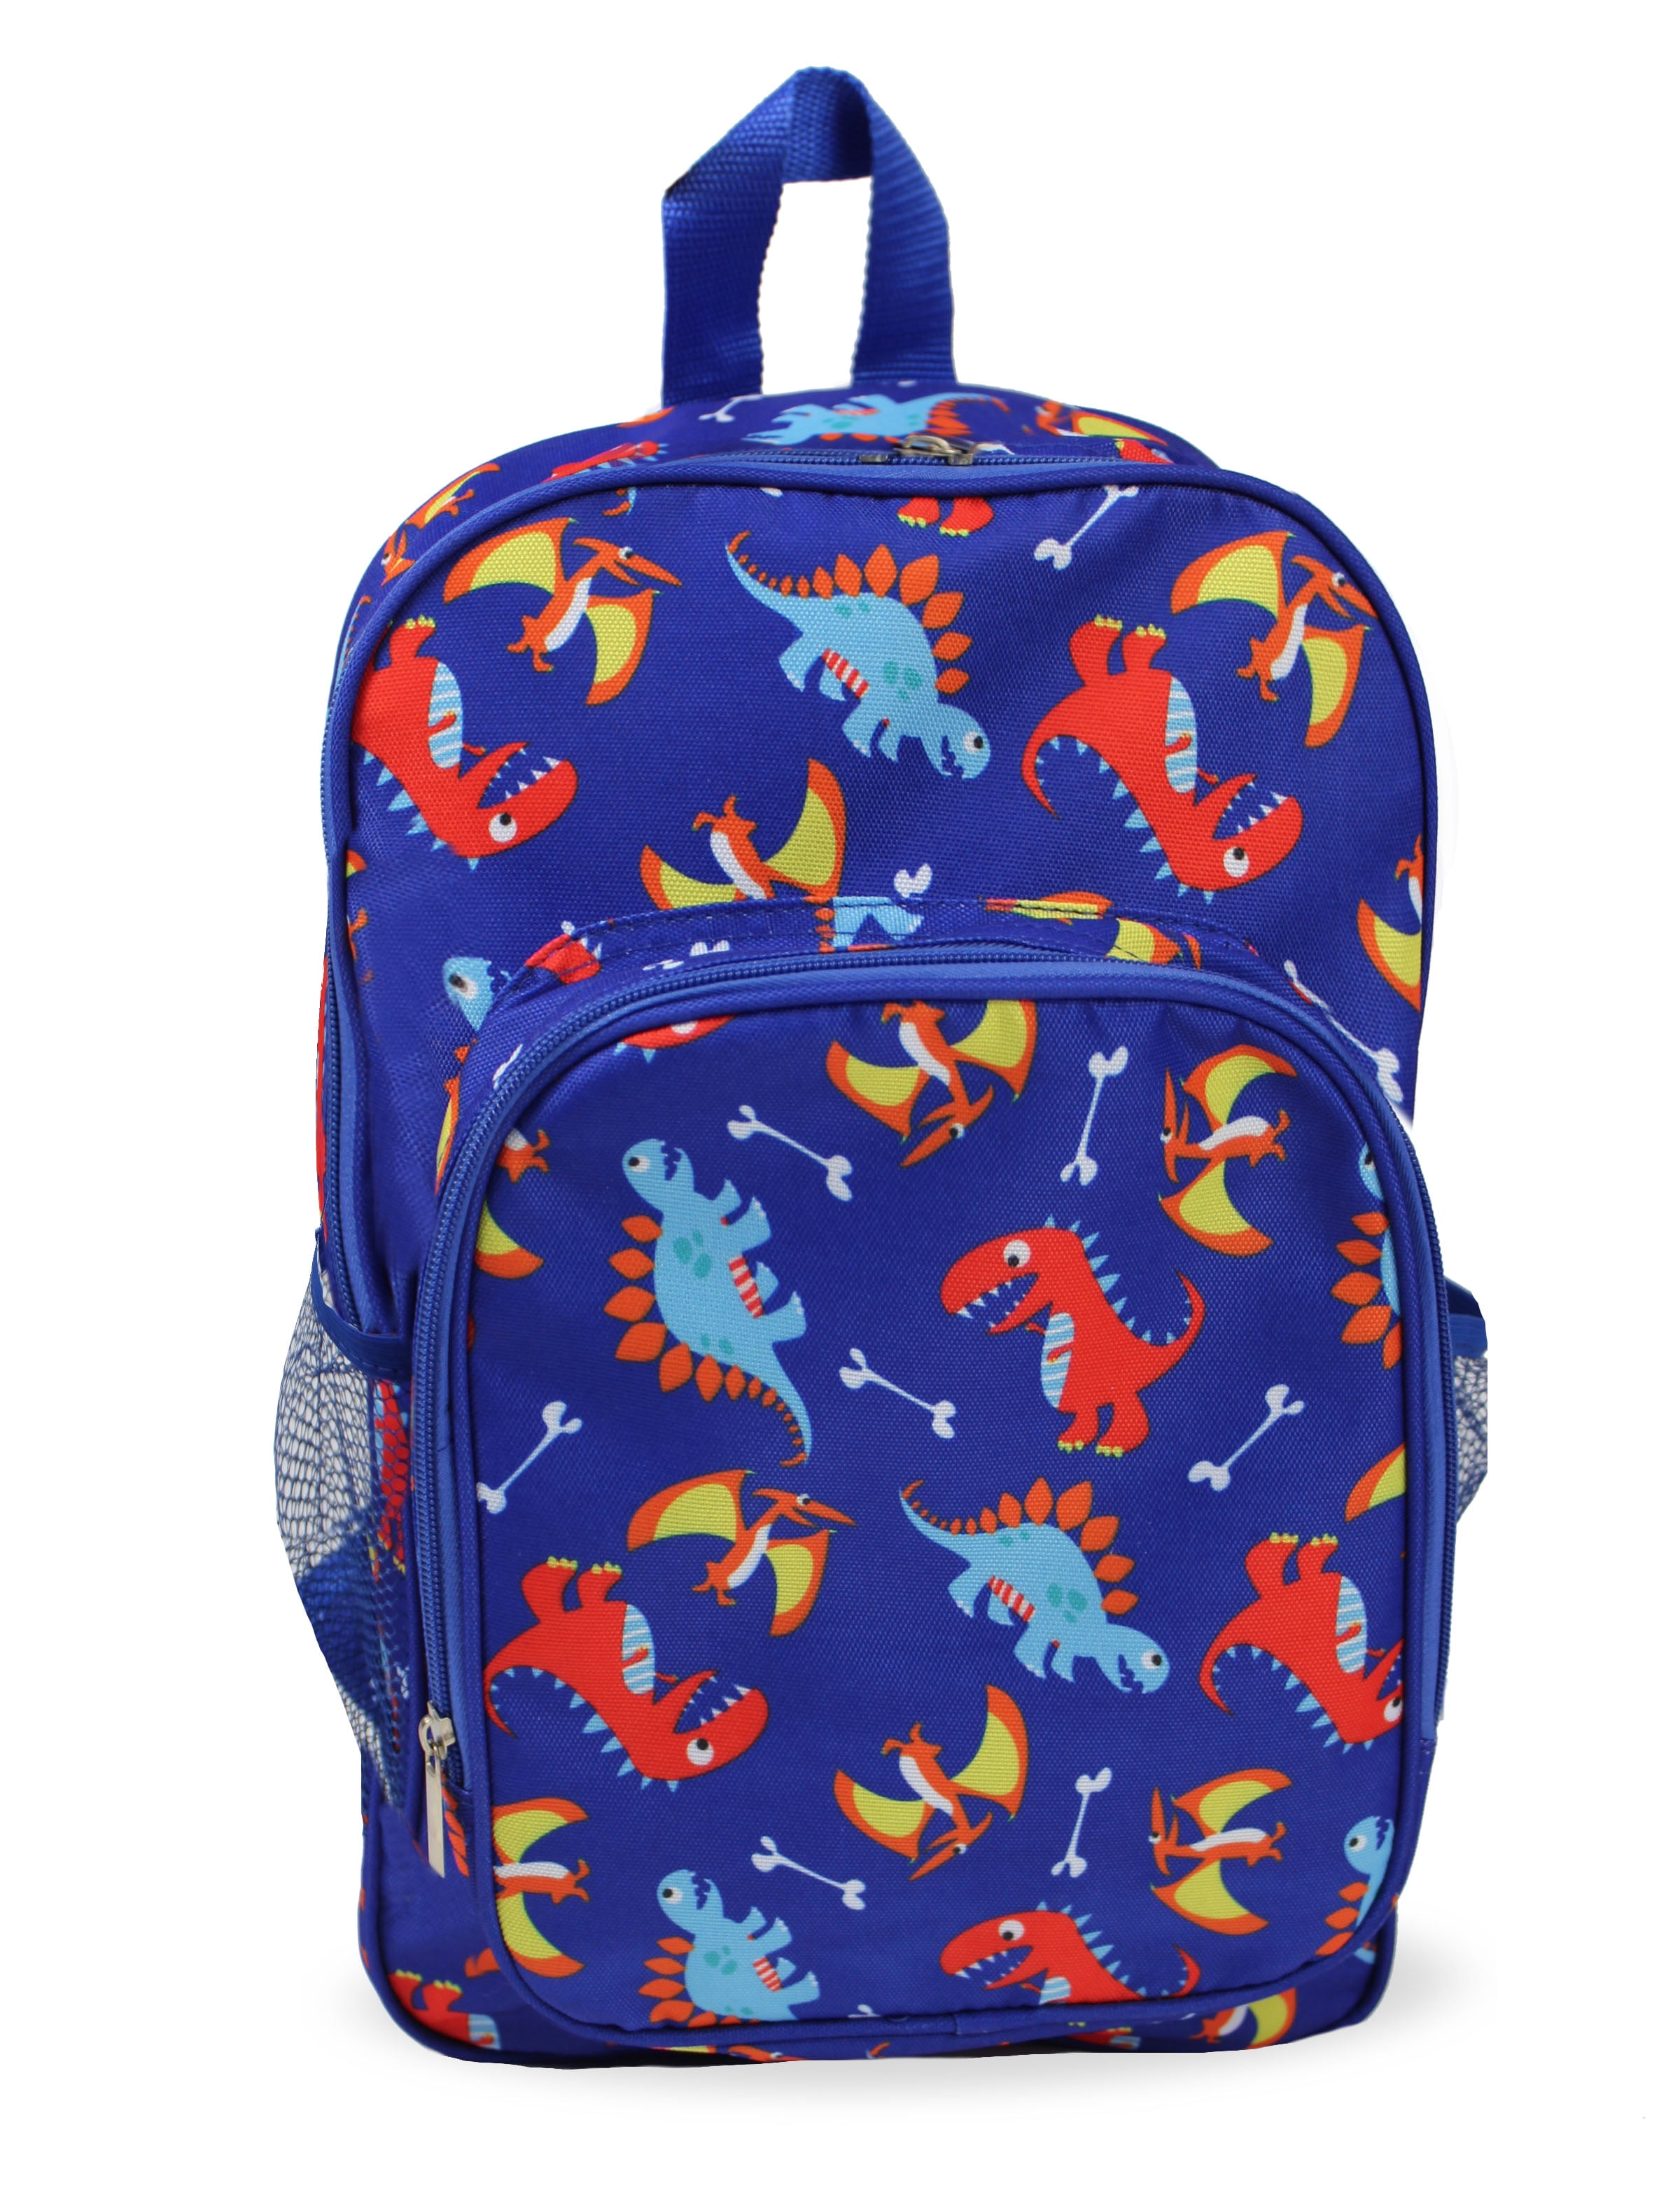 Keeli Kids Blue Dinosaur Backpack Toddler Girls Boys Preschool ...